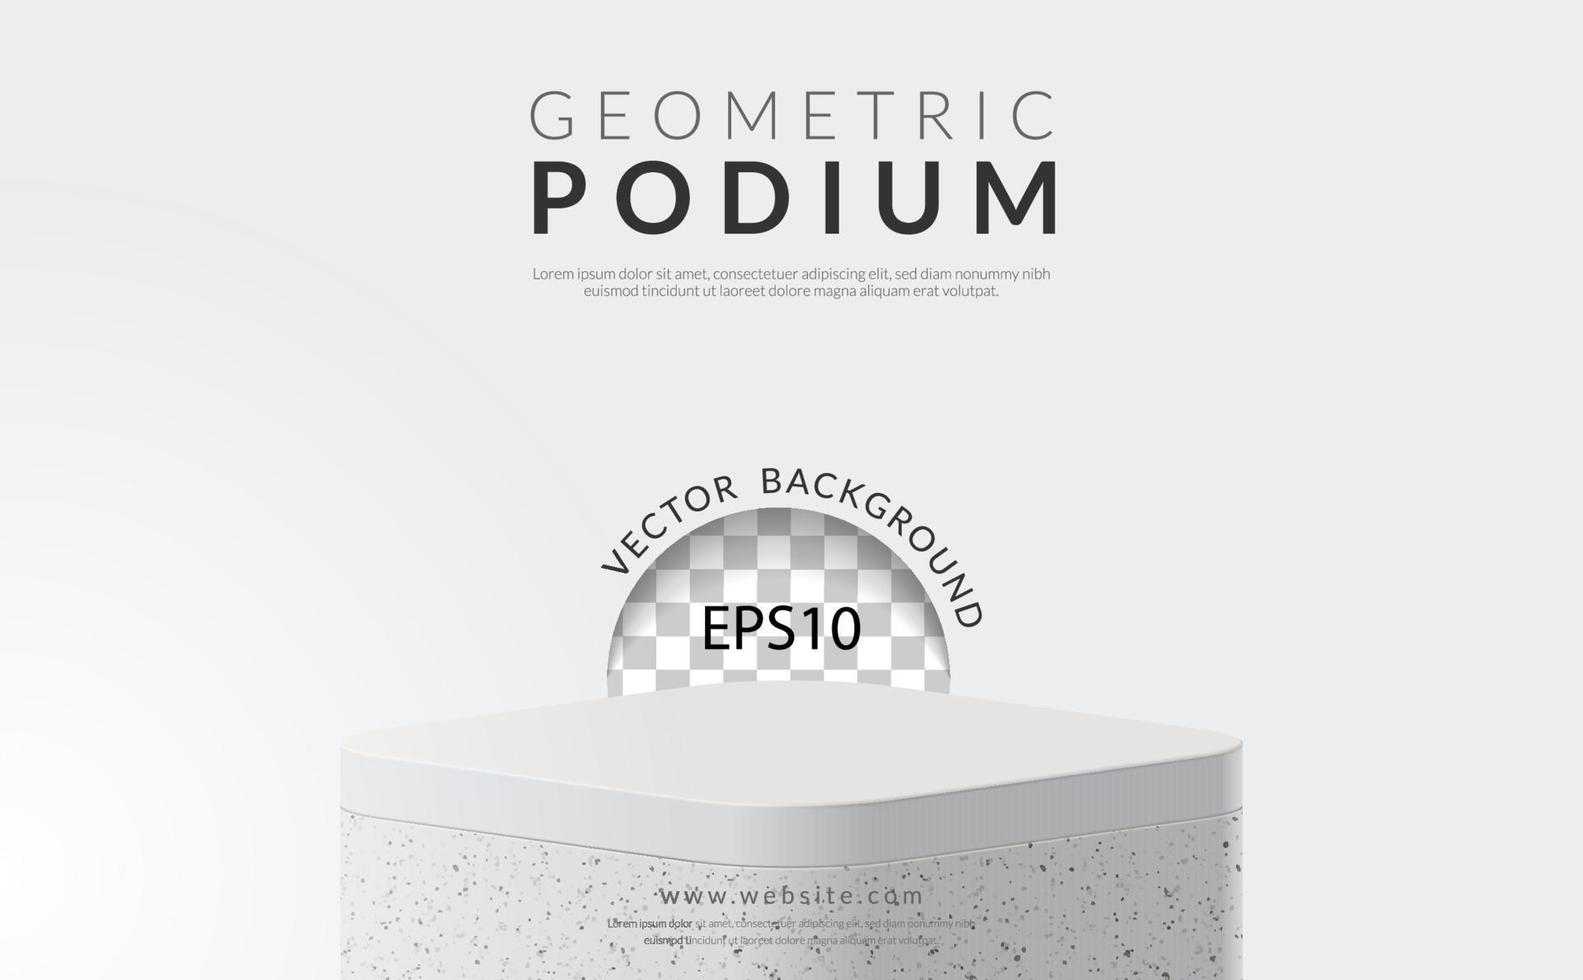 geometrisk produkt visa begrepp, rektangel vit marmor podium på vit bakgrund, vektor illustration